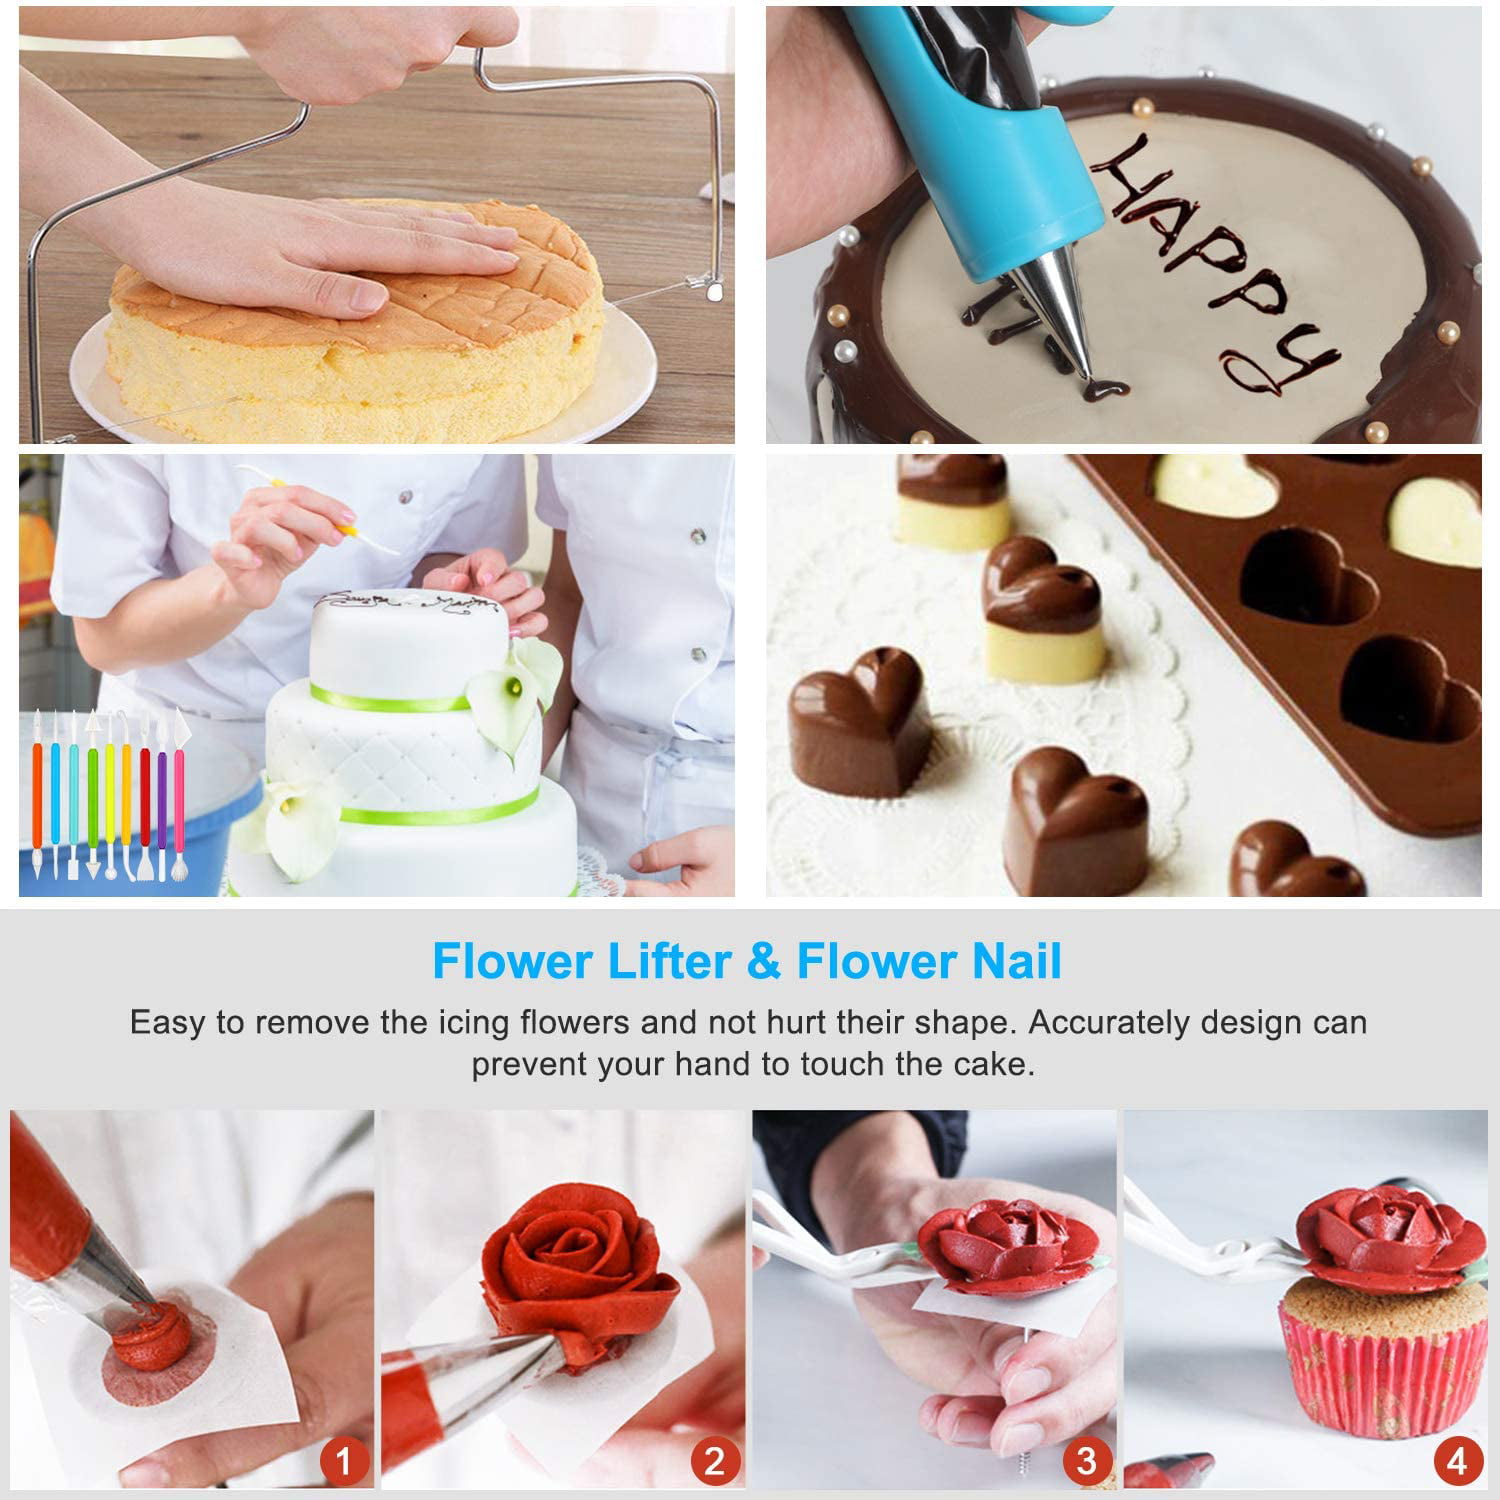 Details about   Cake Decorating Supplies Kit Beginners Cupcake Making DIY Baking Tool 114 Piece